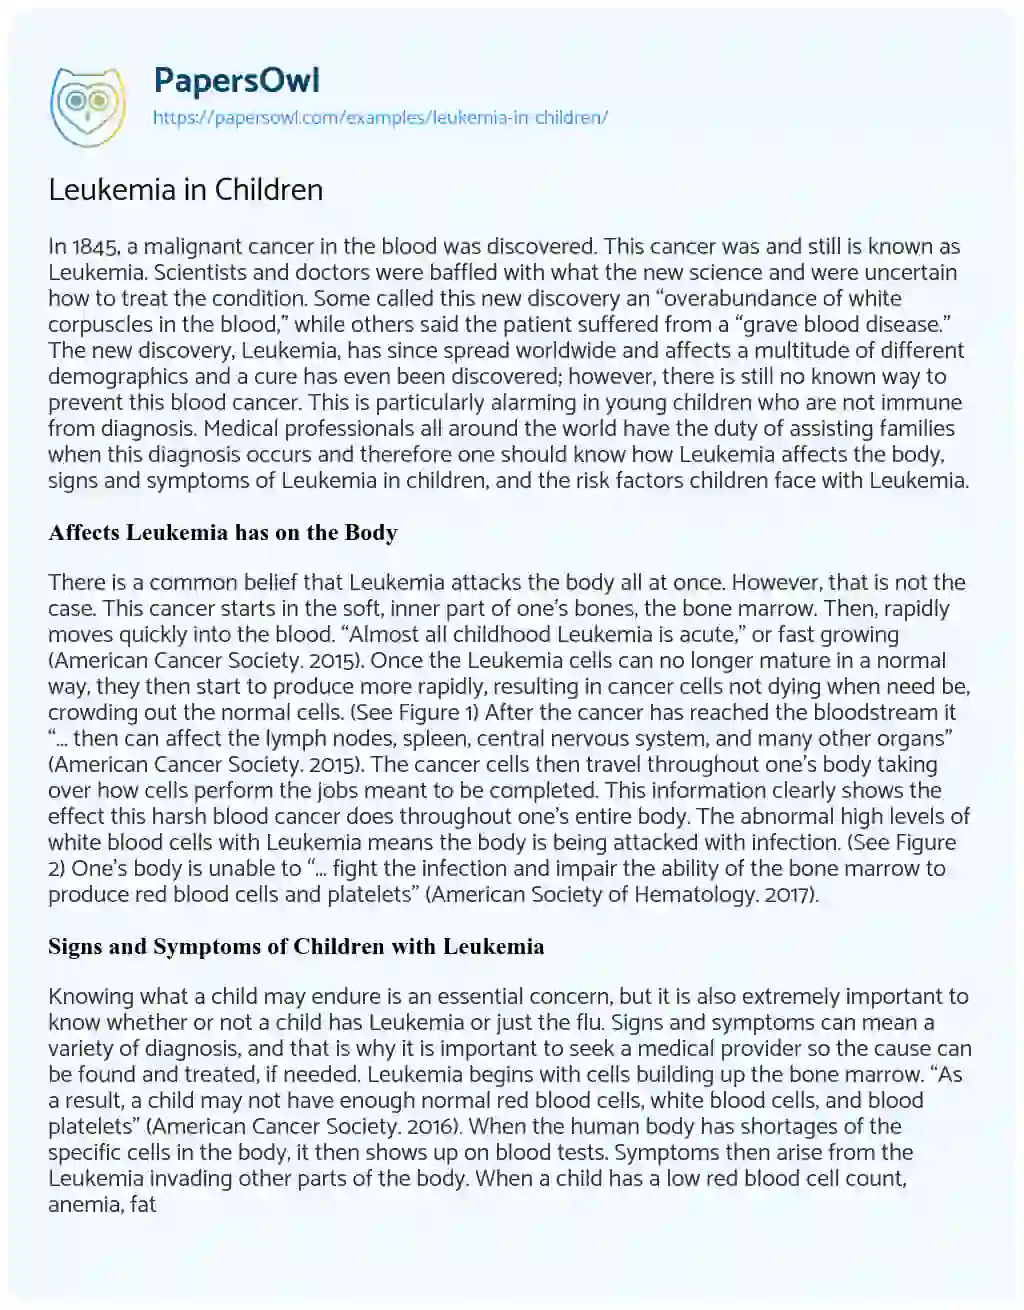 Essay on Leukemia in Children